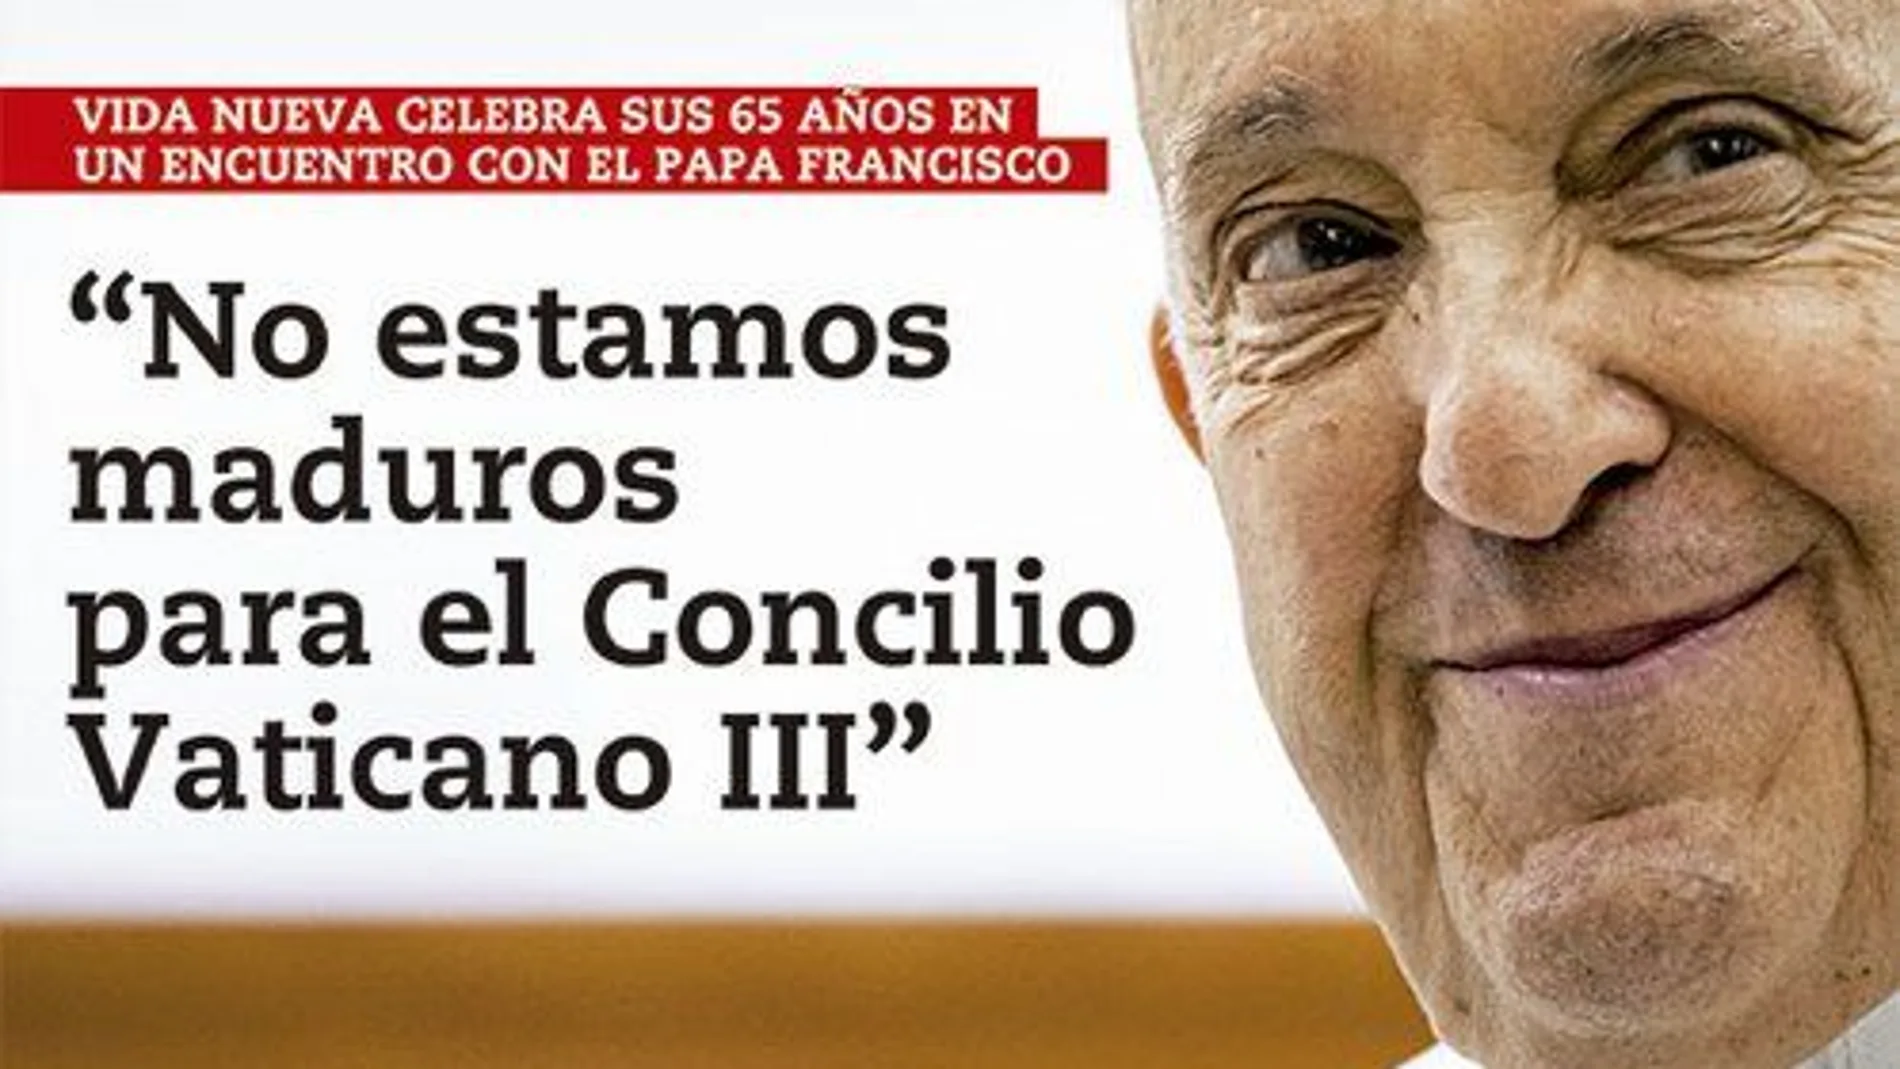 El Papa Francisco: “No estamos maduros para un Concilio Vaticano III”